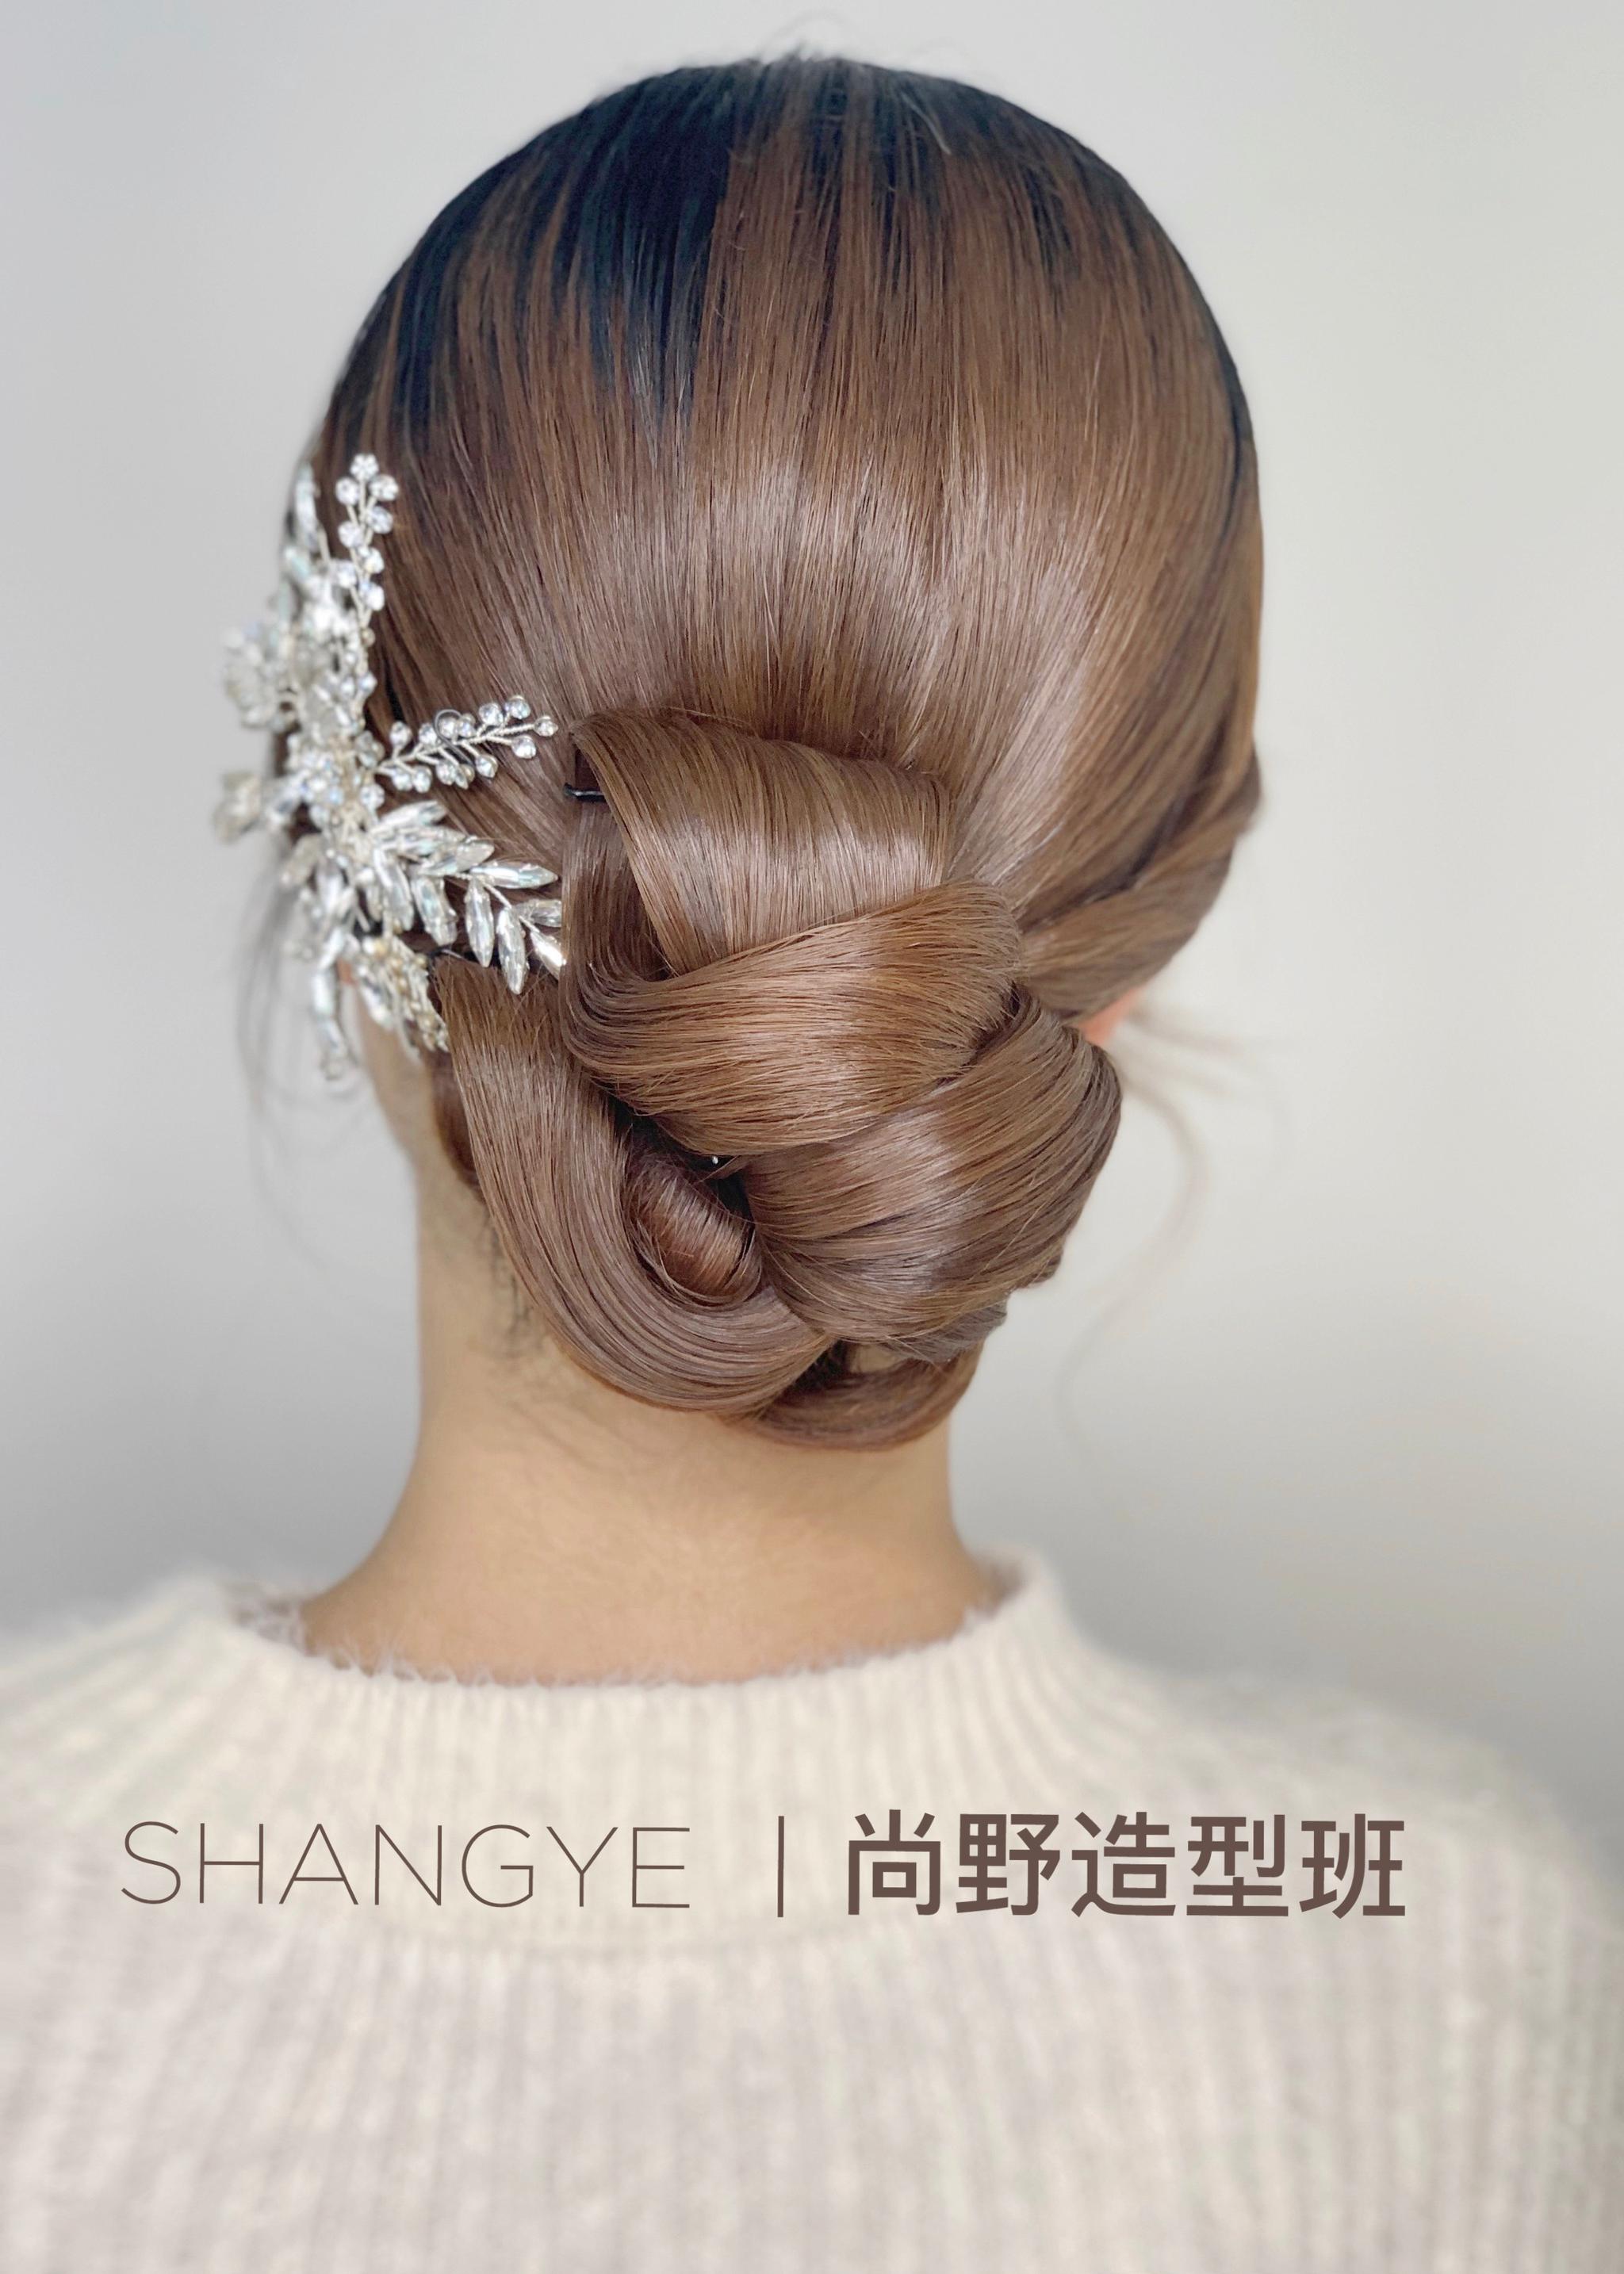 中式新娘 复古 新娘造型 新娘发型 盘发 … - 堆糖，美图壁纸兴趣社区